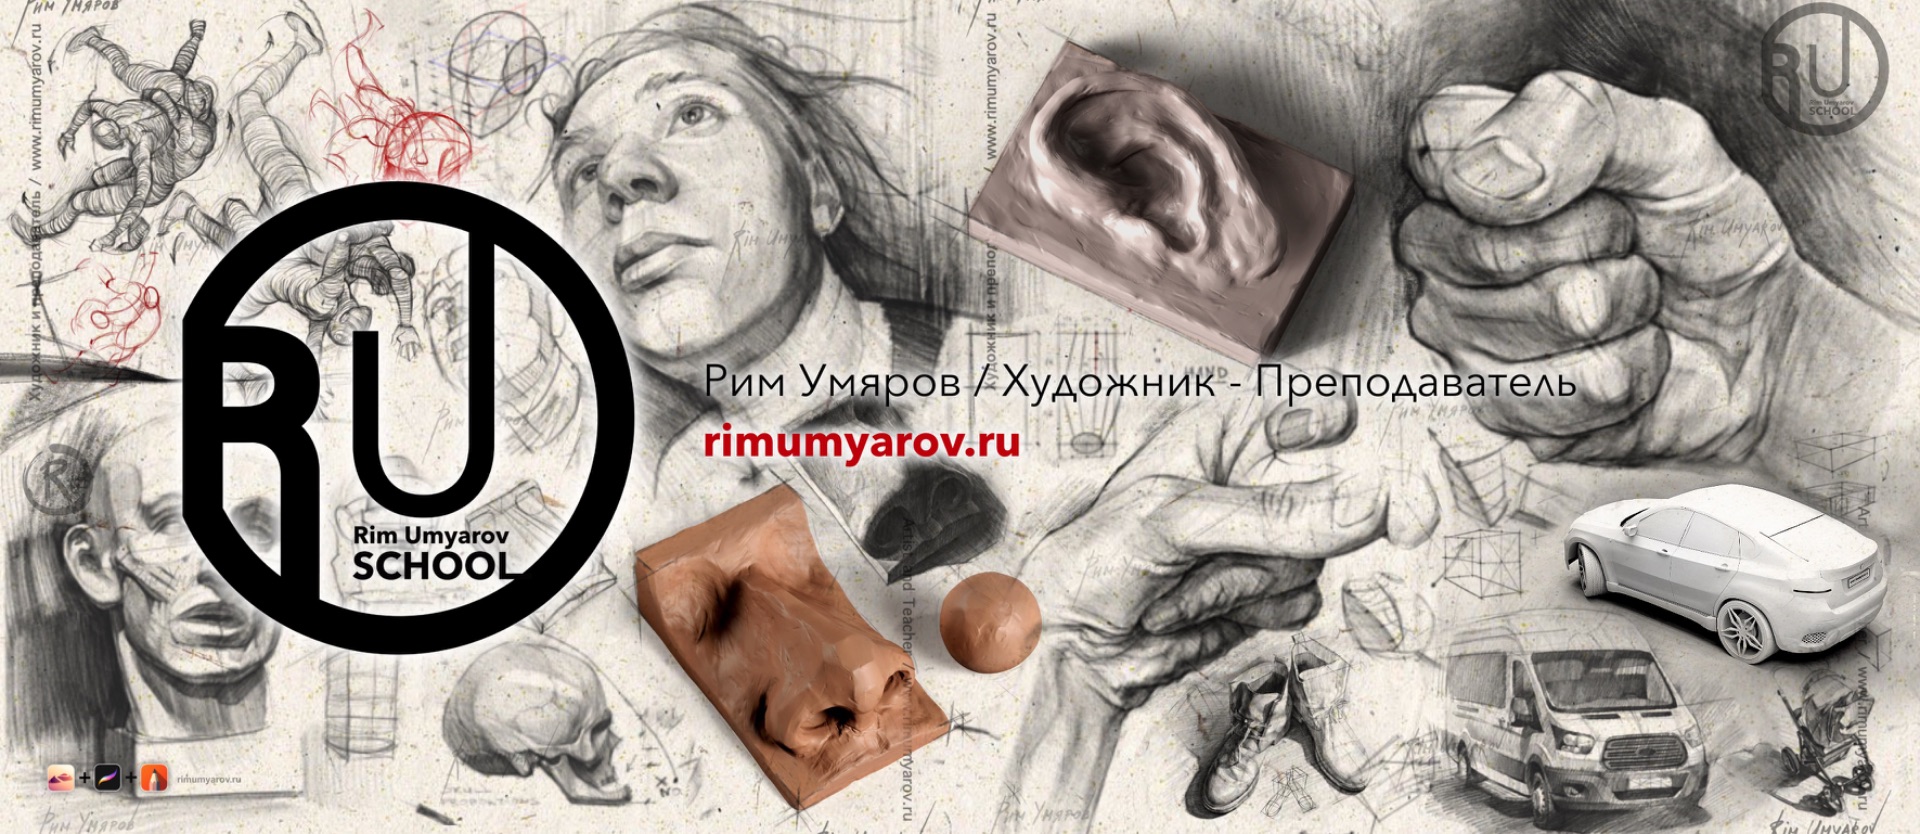 аналитический рисунок, курсы, Рим Умяров, Rim Umyarov, artist, художник, рисунок, обучение, уроки, скульптура, sculpting, drawing, tutorial